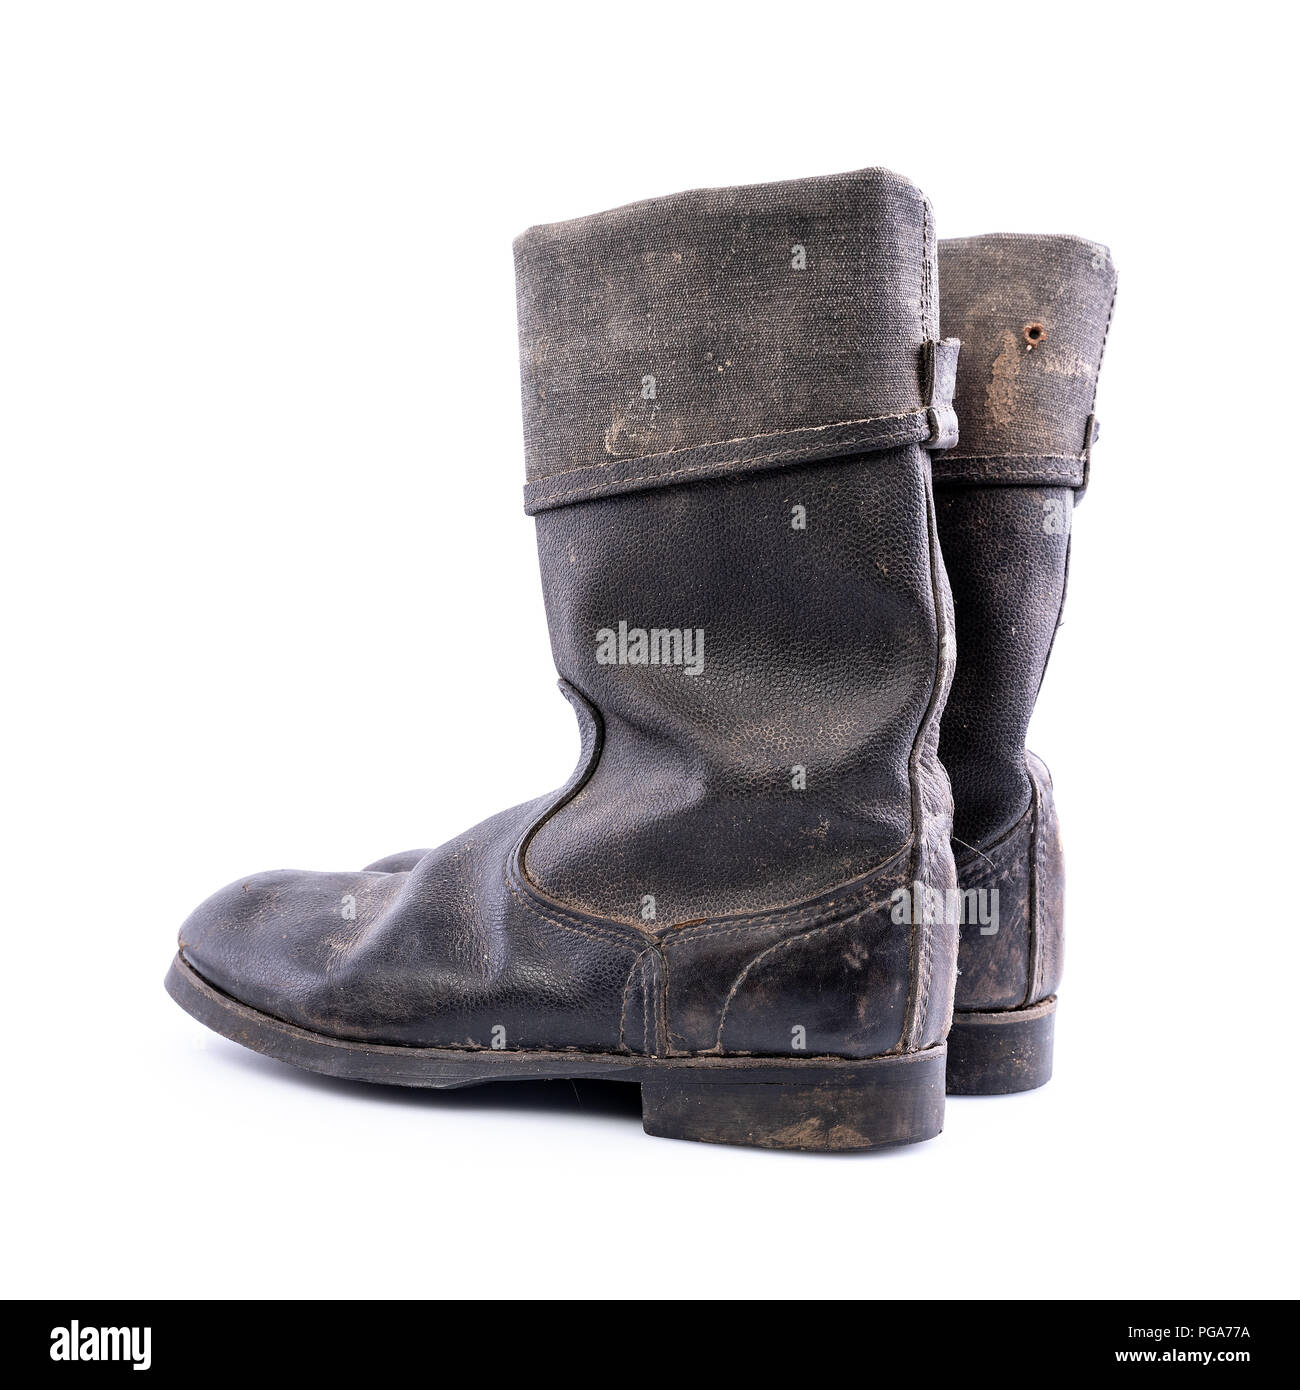 Botas militares de cuero ejército soviético URSS Zapatos Zapatos para hombre Botas Botas de trabajo y estilo militar 